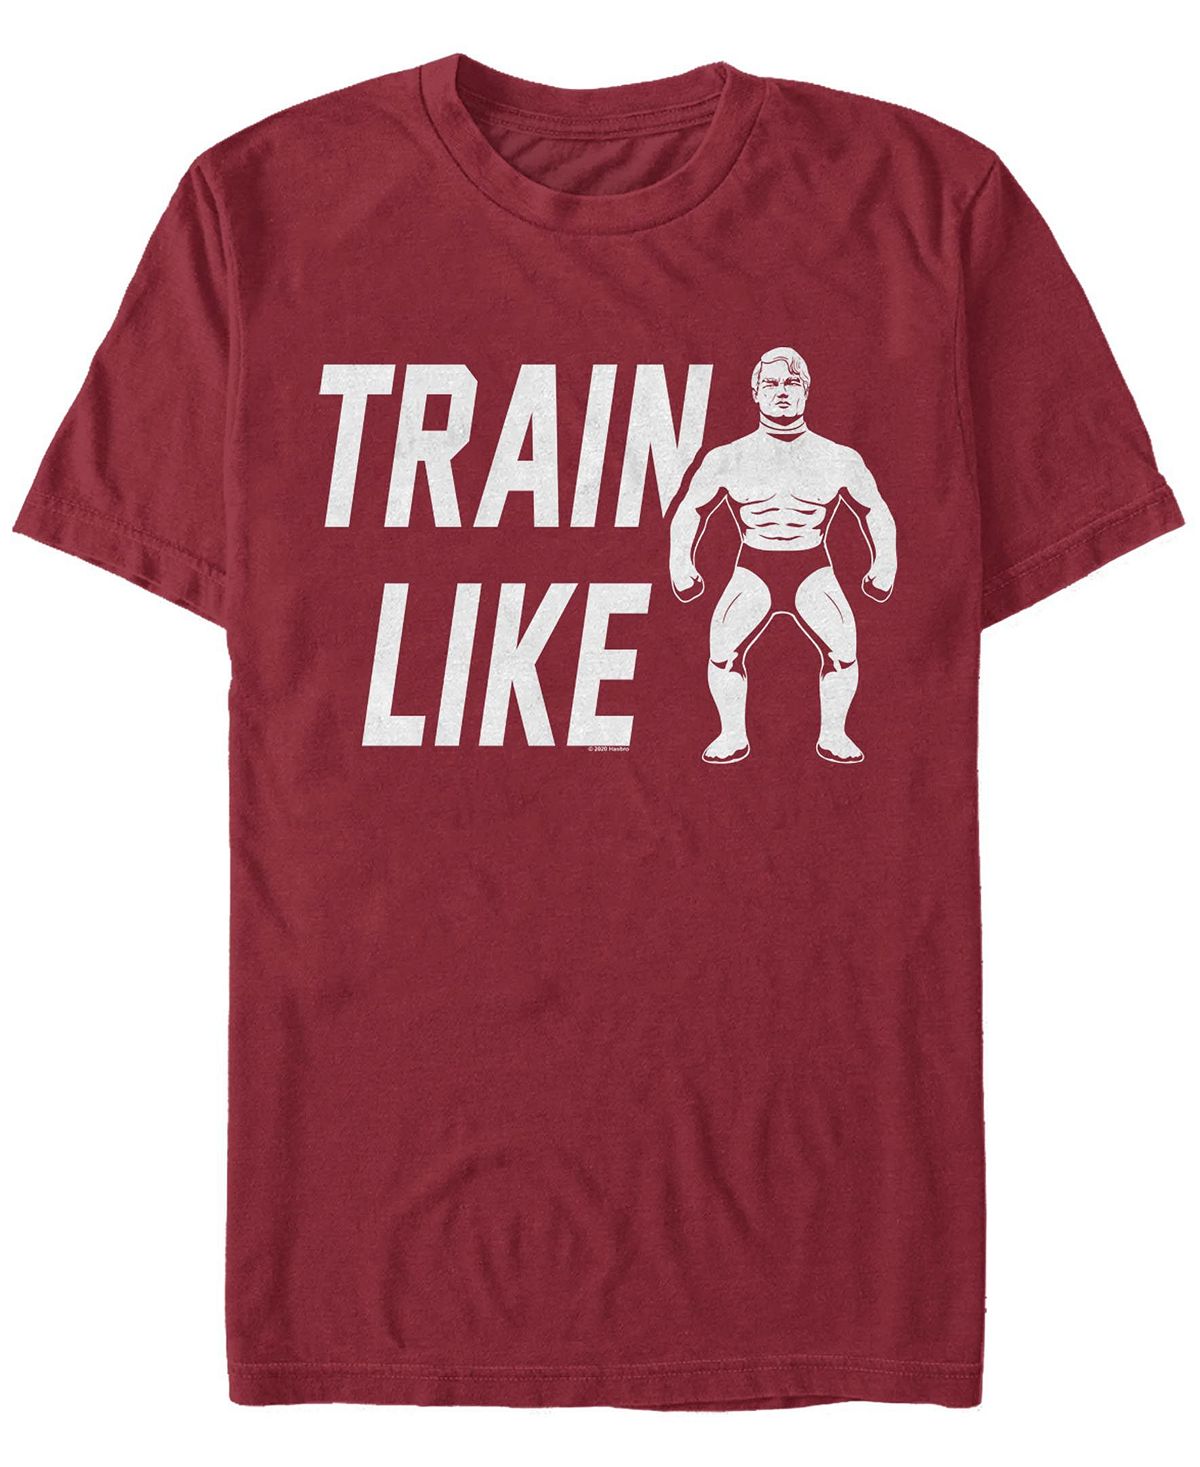 Мужская футболка с круглым вырезом train like с короткими рукавами Fifth Sun